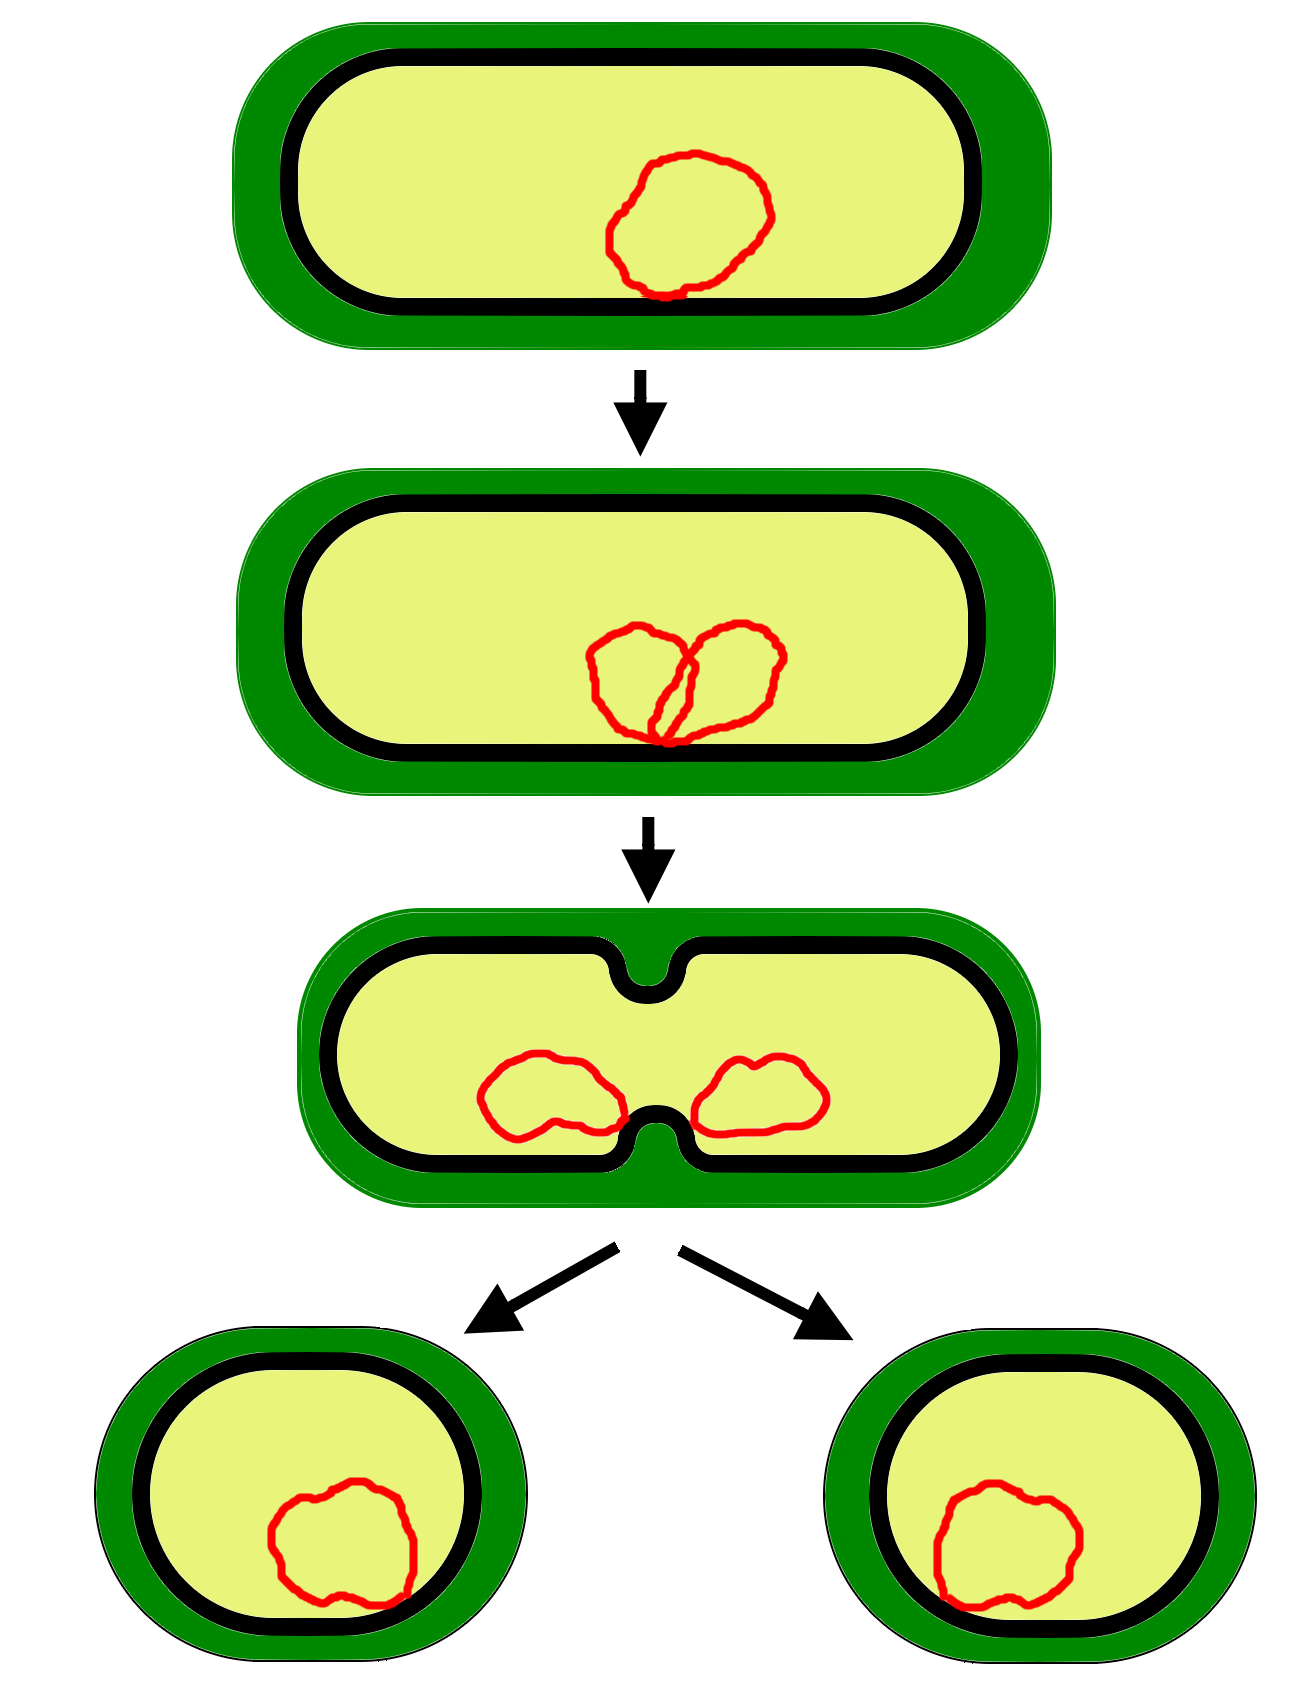 Деление центральной клетки. Схема бинарного деления бактериальной клетки. Бинарное деление бактерий схема. Схема деления прокариотической клетки. Размножение бактерий схема.